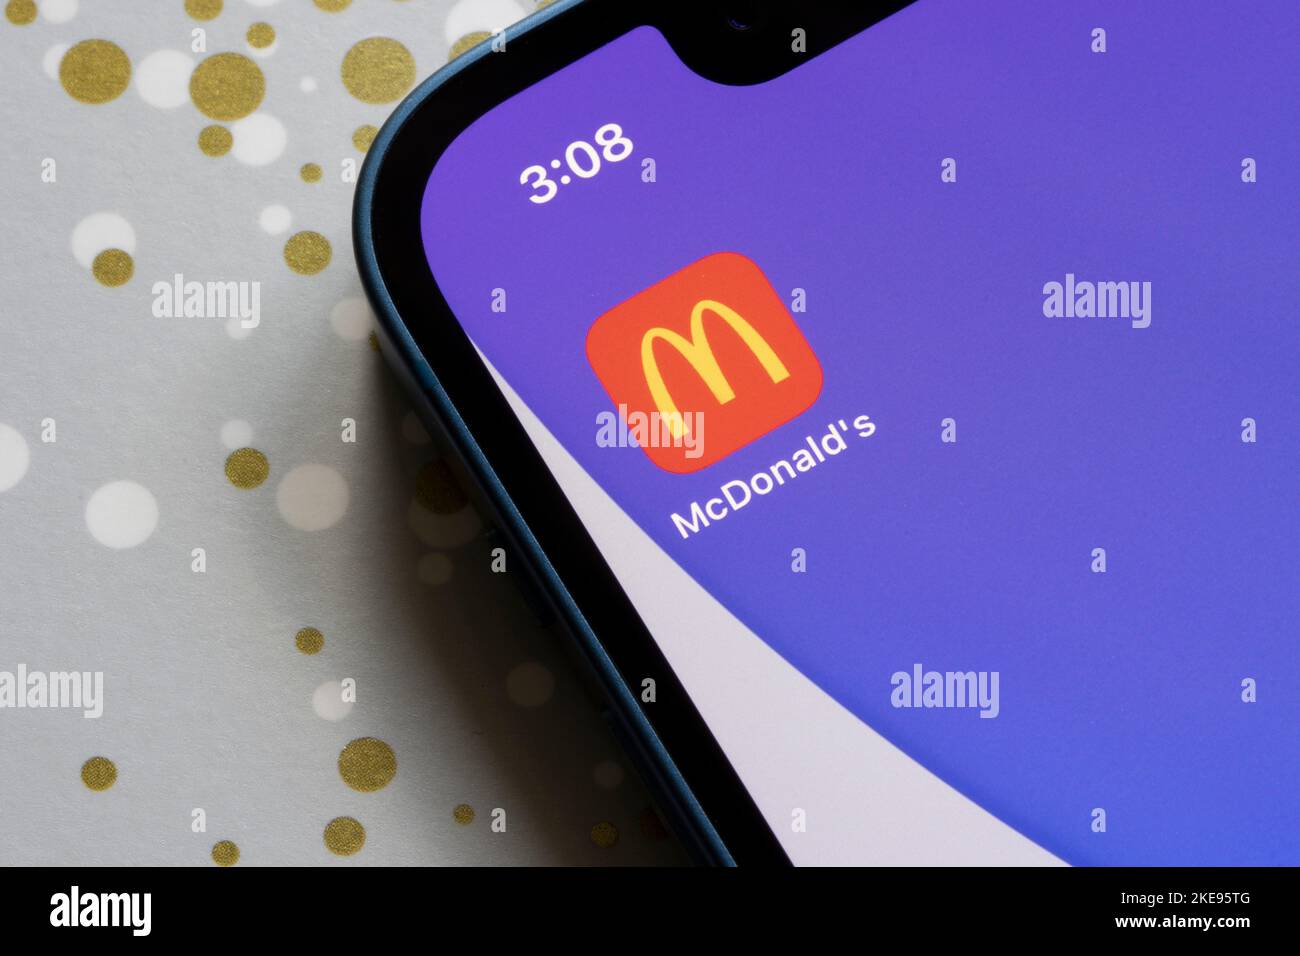 L'icona dell'app McDonald's è visibile su un iPhone. McDonald's Corporation è una catena di fast food americana e società immobiliare con sede a Chicago. Foto Stock